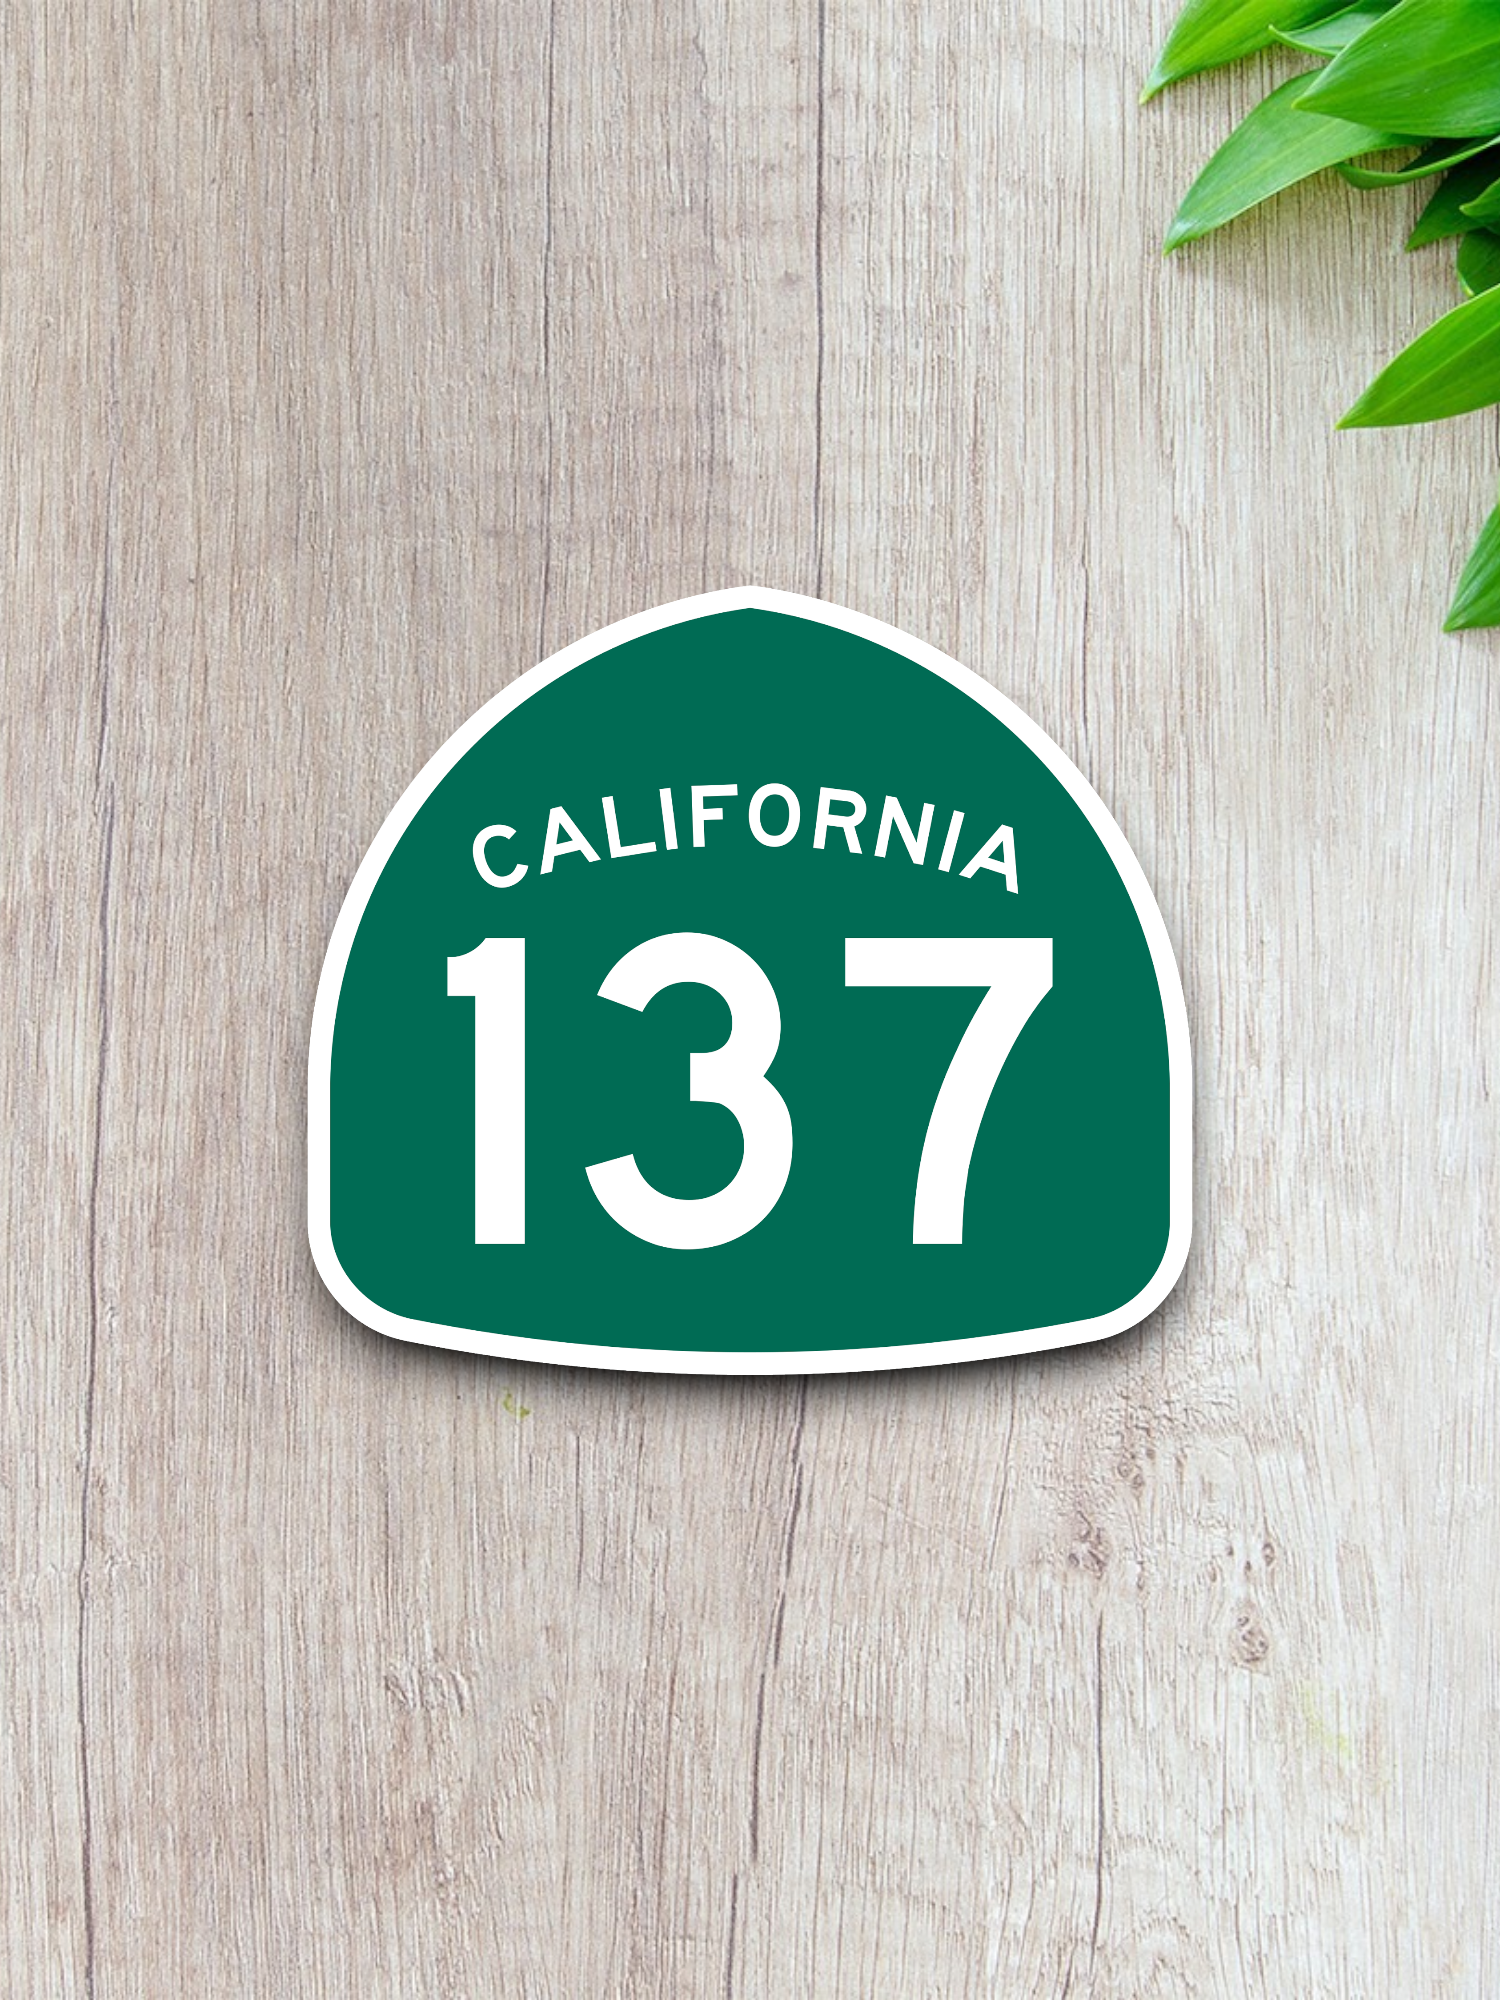 California State Route 137 Sticker